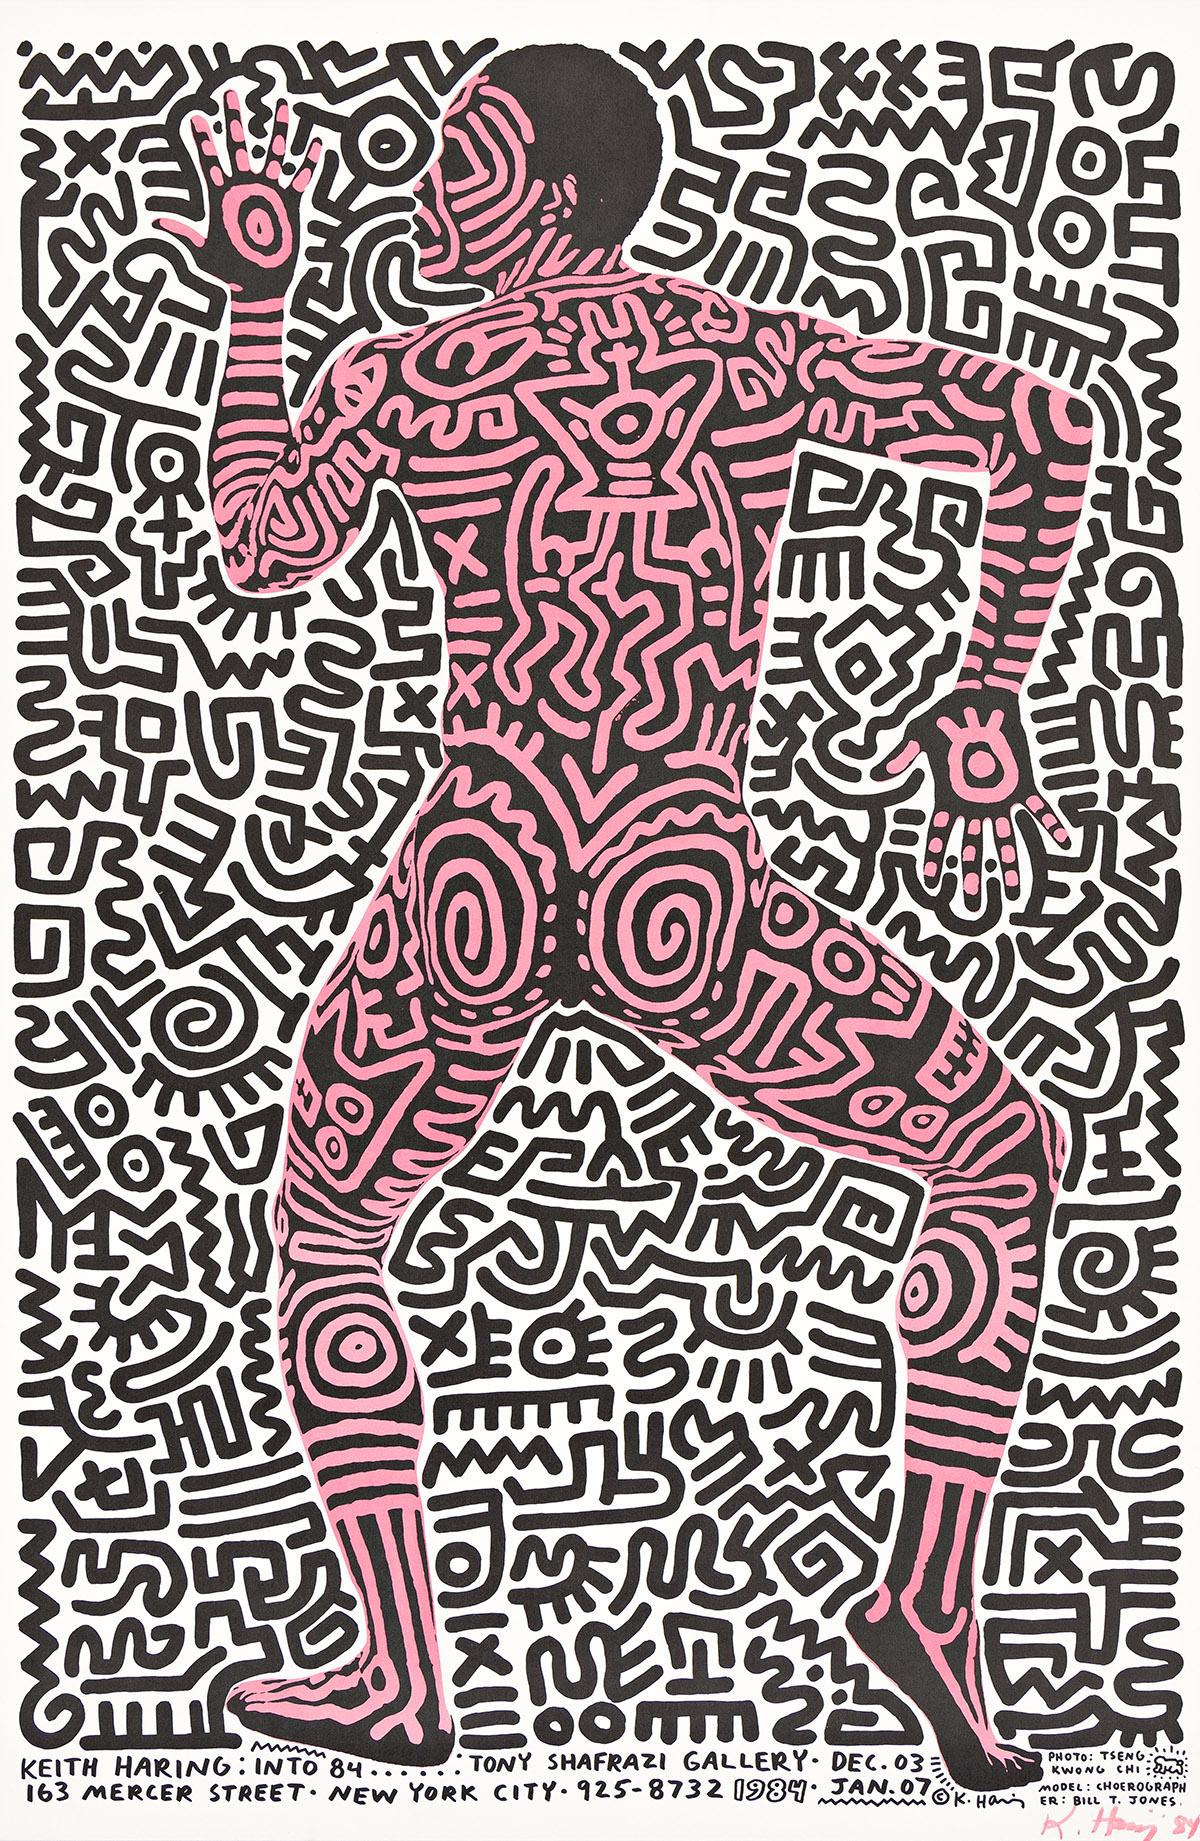 Farbige Offsetlithographie. Signiert und datiert mit Filzstift und rosa Tinte unten rechts. Herausgegeben von der Tony Shafrazi Gallery, New York. 